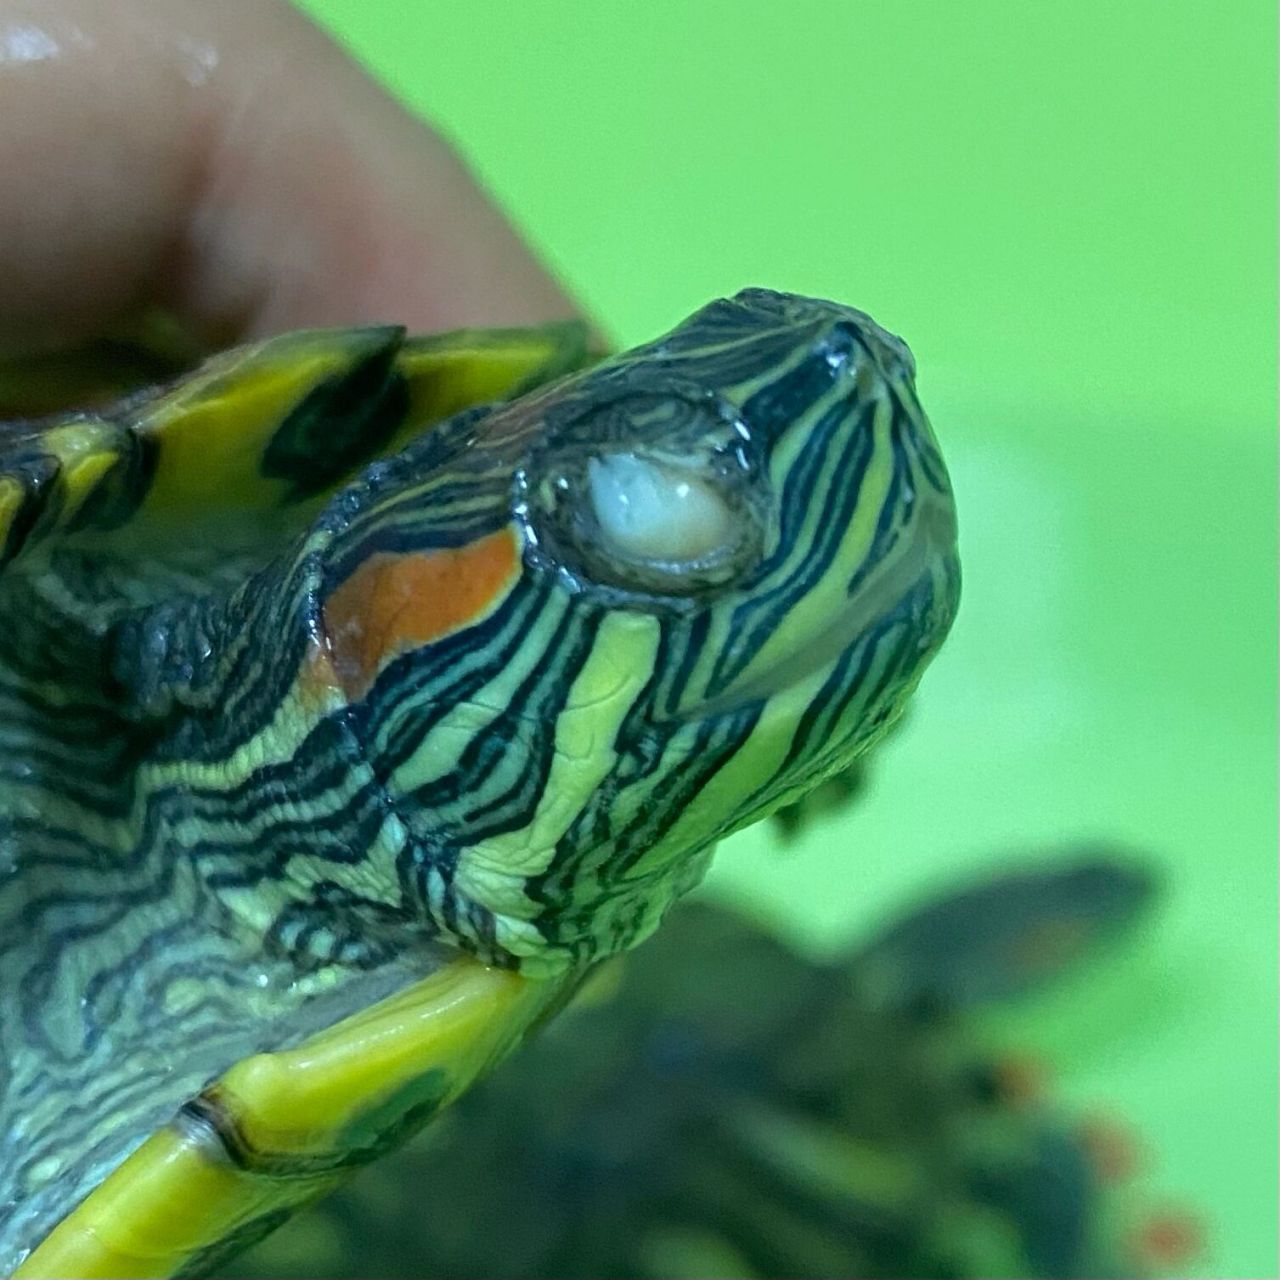 小巴西龟白眼病症状图片